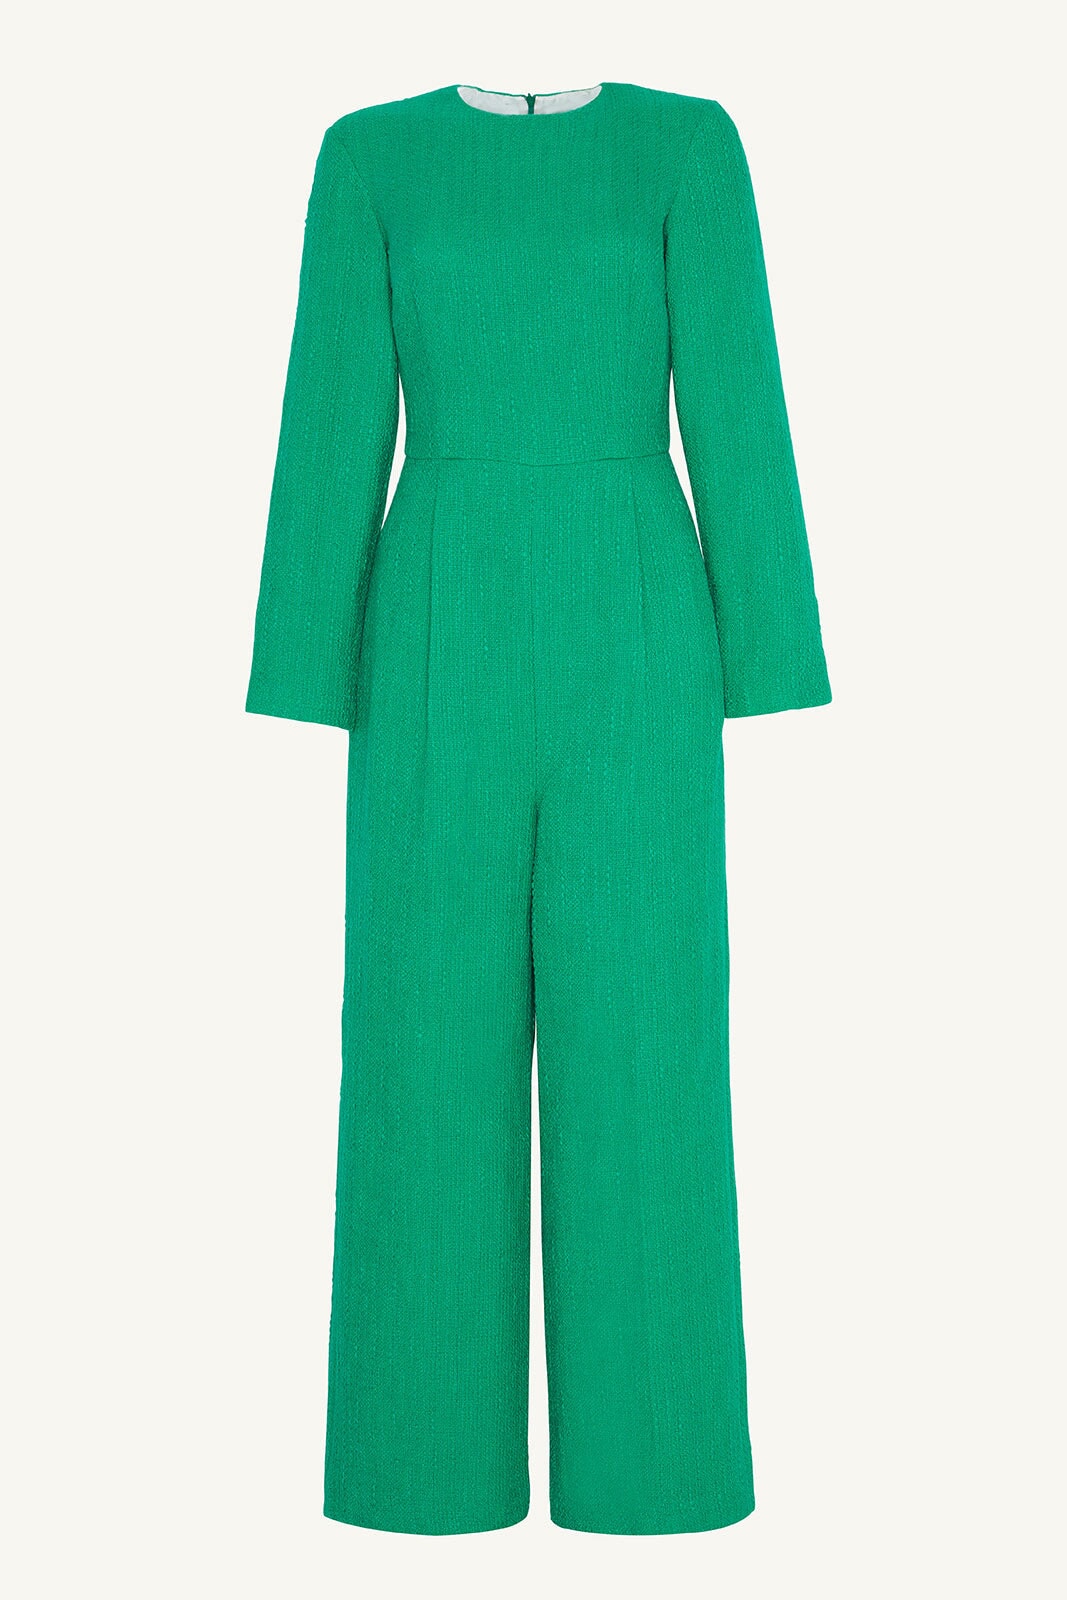 Aurora Tweed Long Sleeve Jumpsuit - Jade Clothing saigonodysseyhotel 